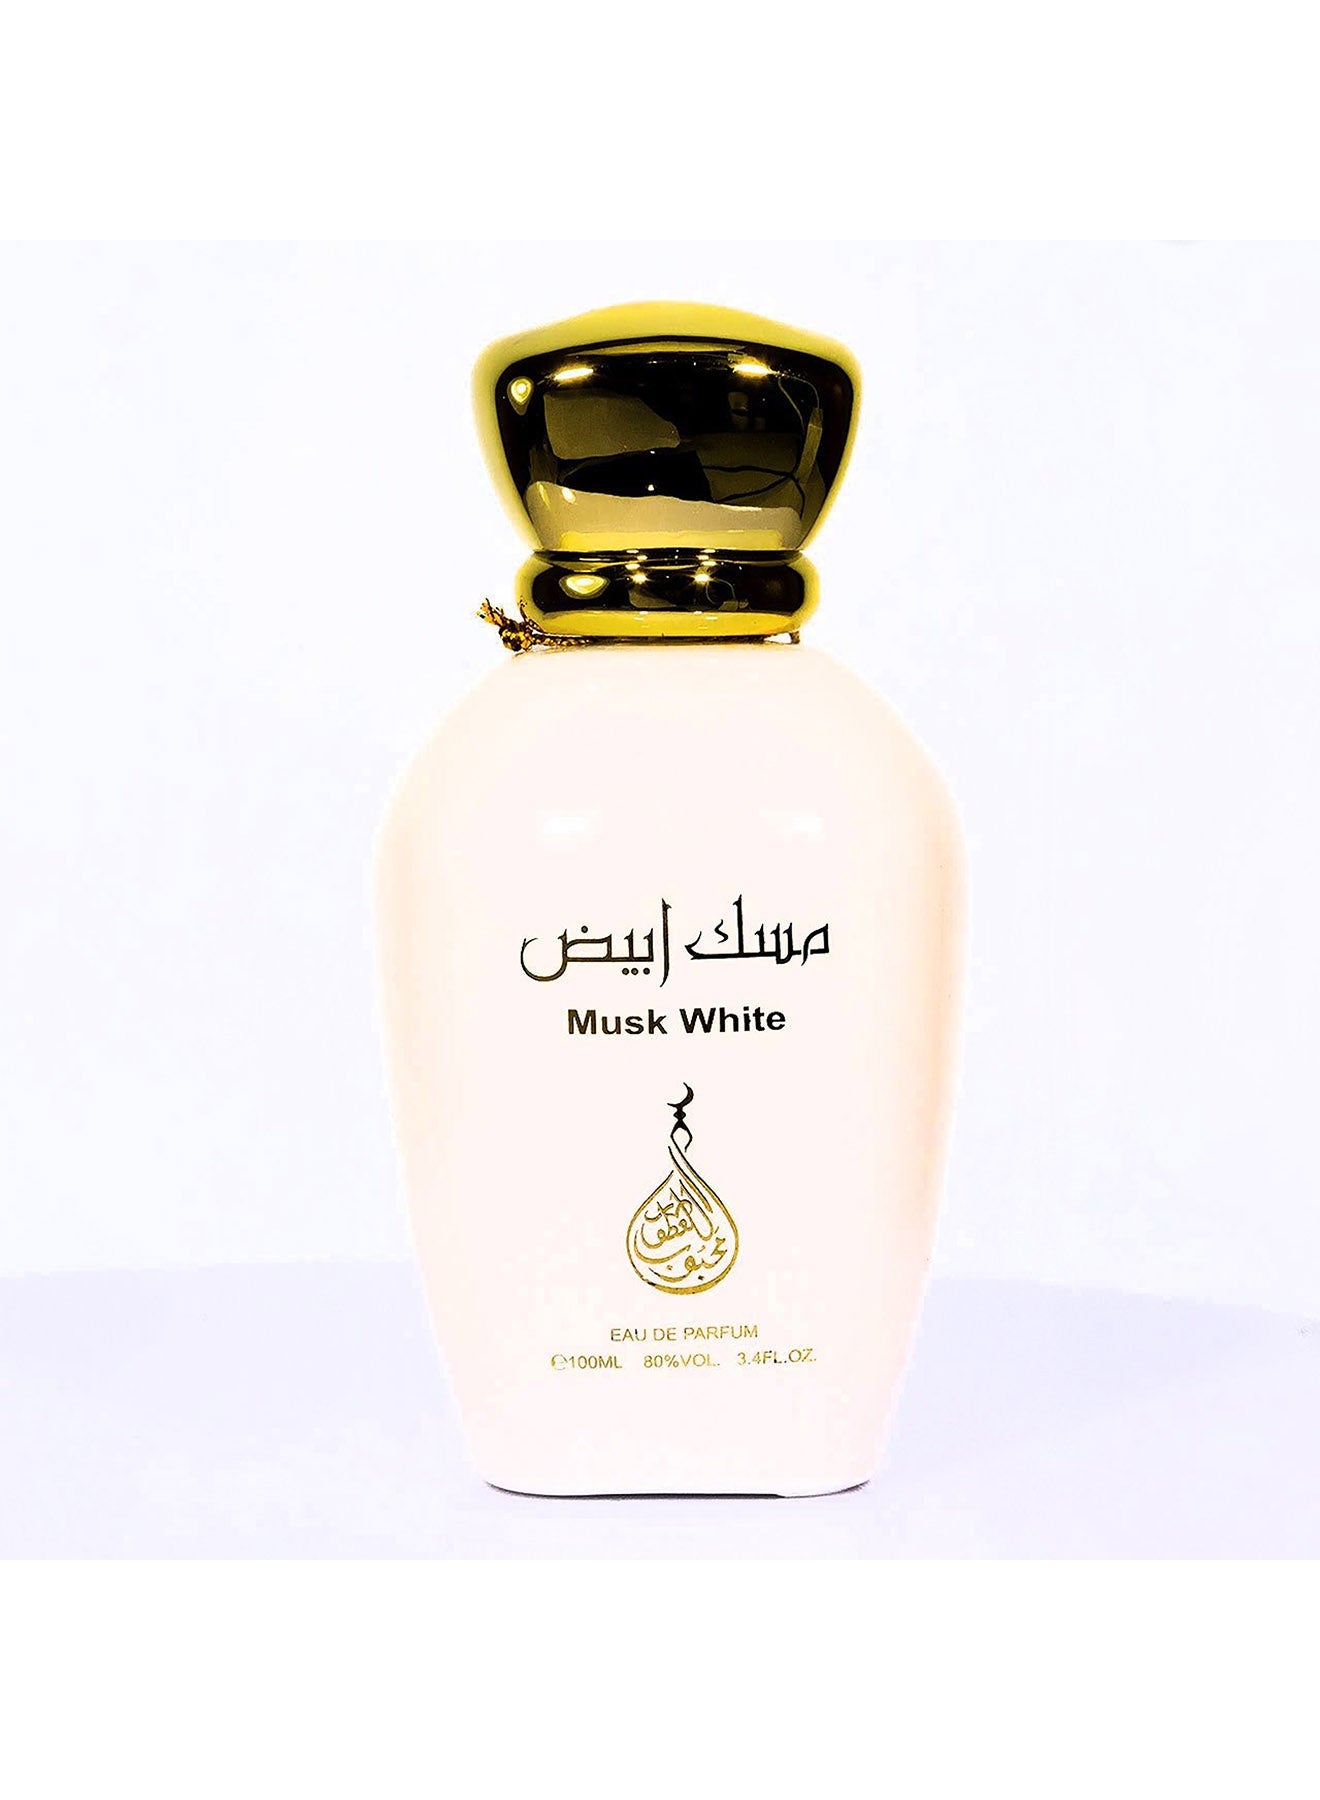 Musk White Eau De Parfum 100ml Value Pack of 2 